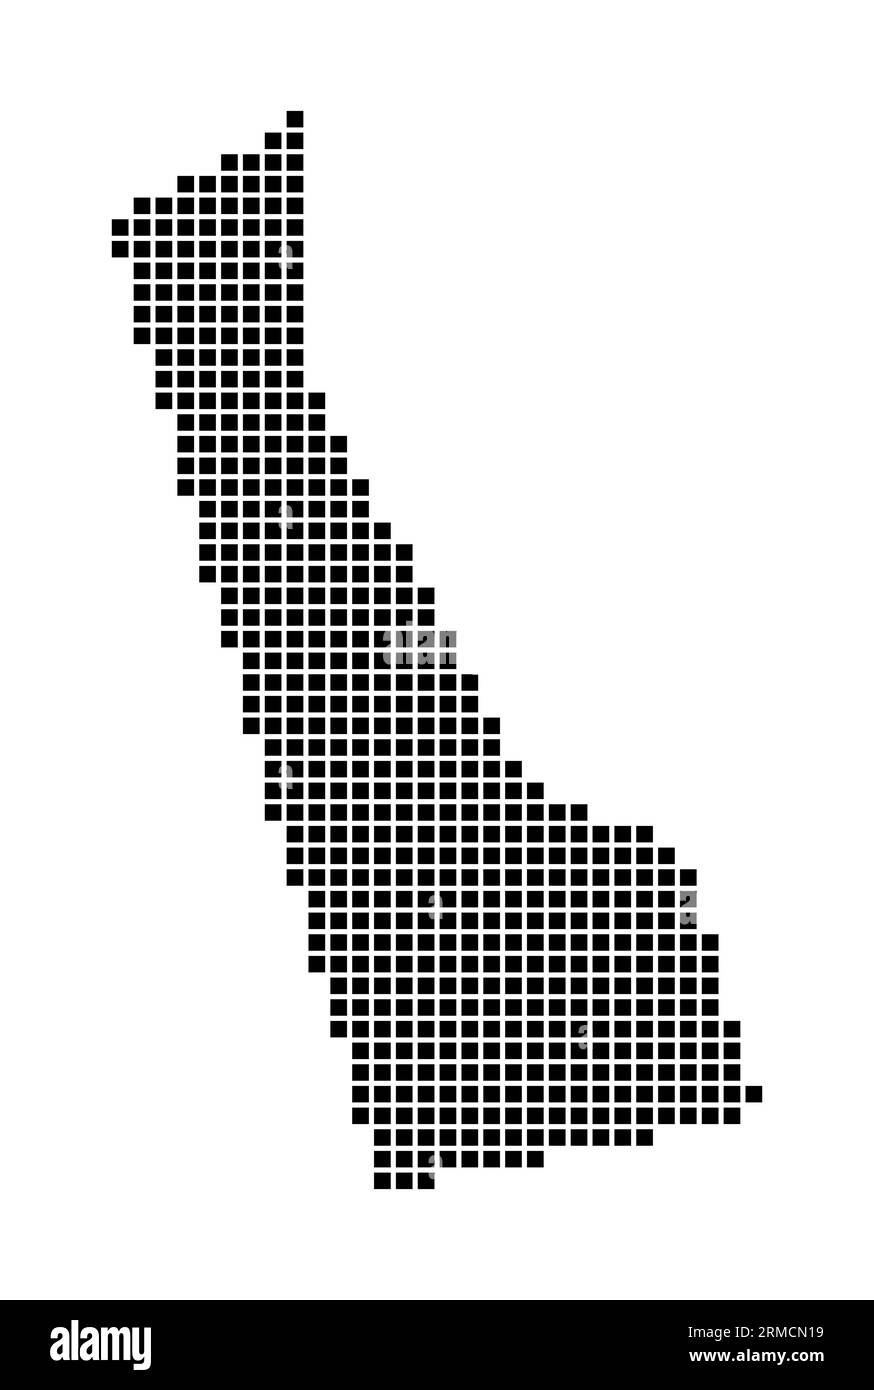 Delaware-Karte. Karte von Delaware im gepunkteten Stil. Rahmen des US-Status, gefüllt mit Rechtecken für Ihre Konstruktion. Vektorillustration. Stock Vektor